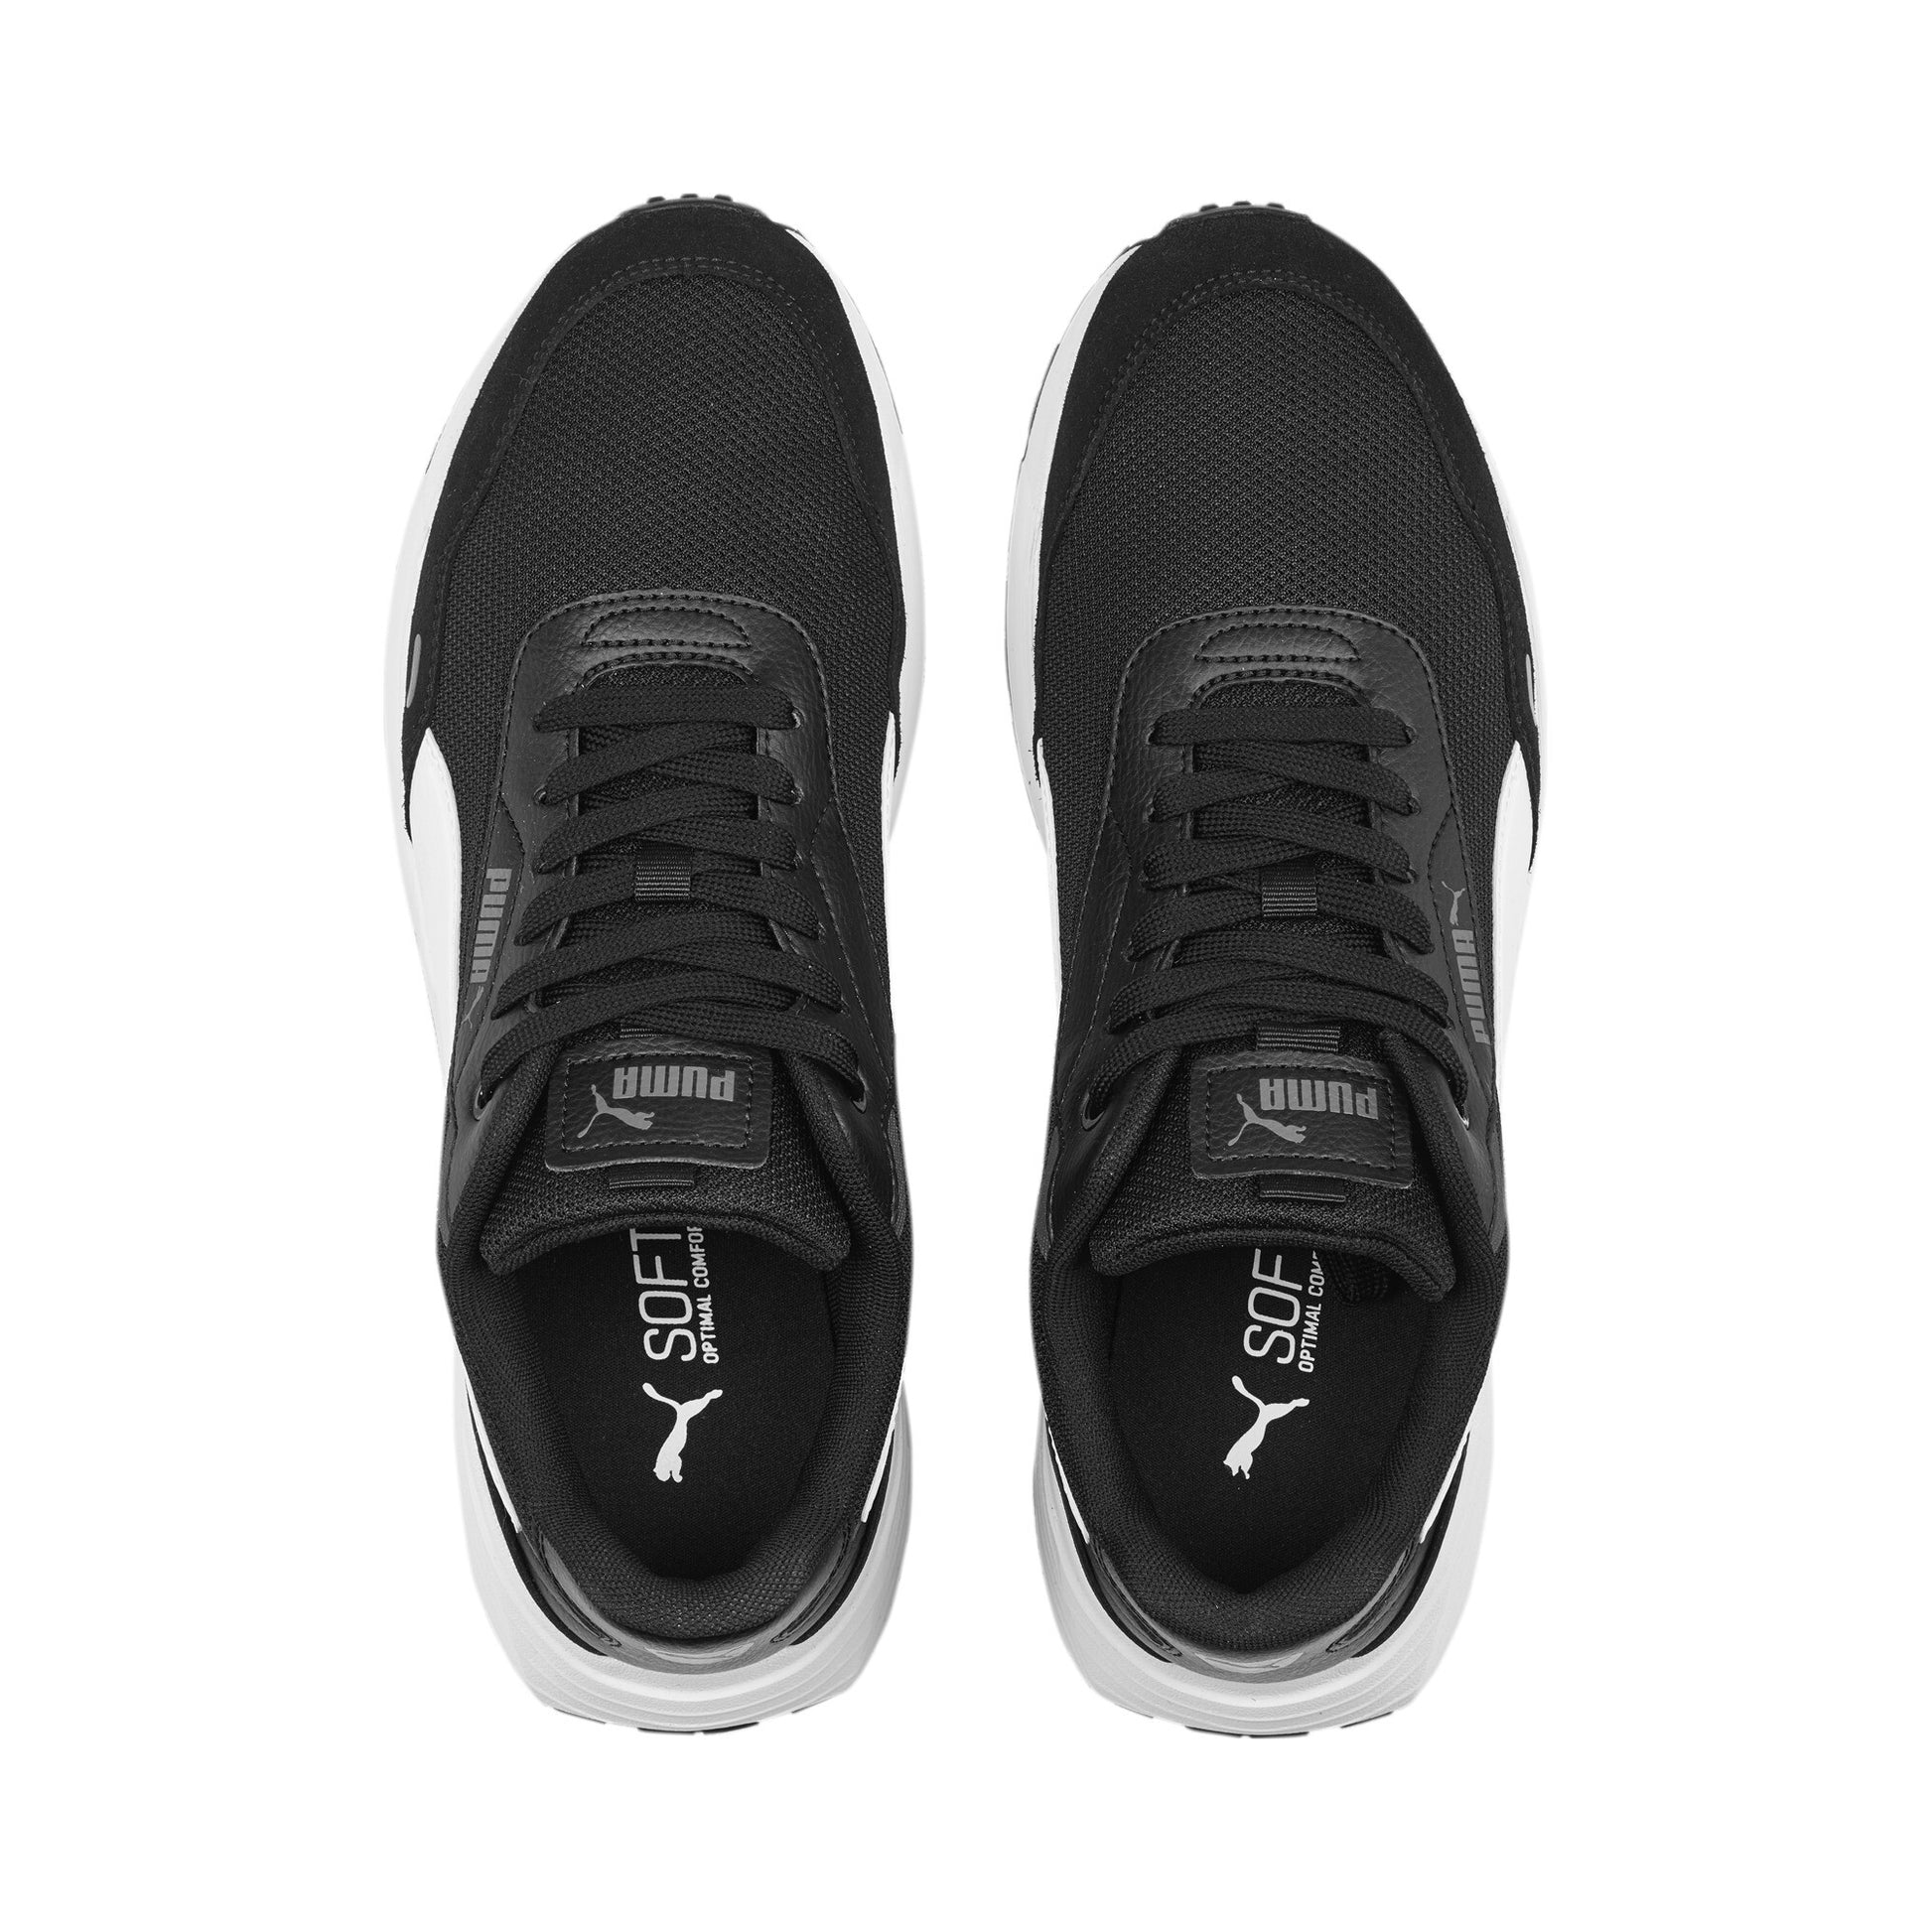 נעלי ספורט לגברים Runtamed בצבע שחור ולבן